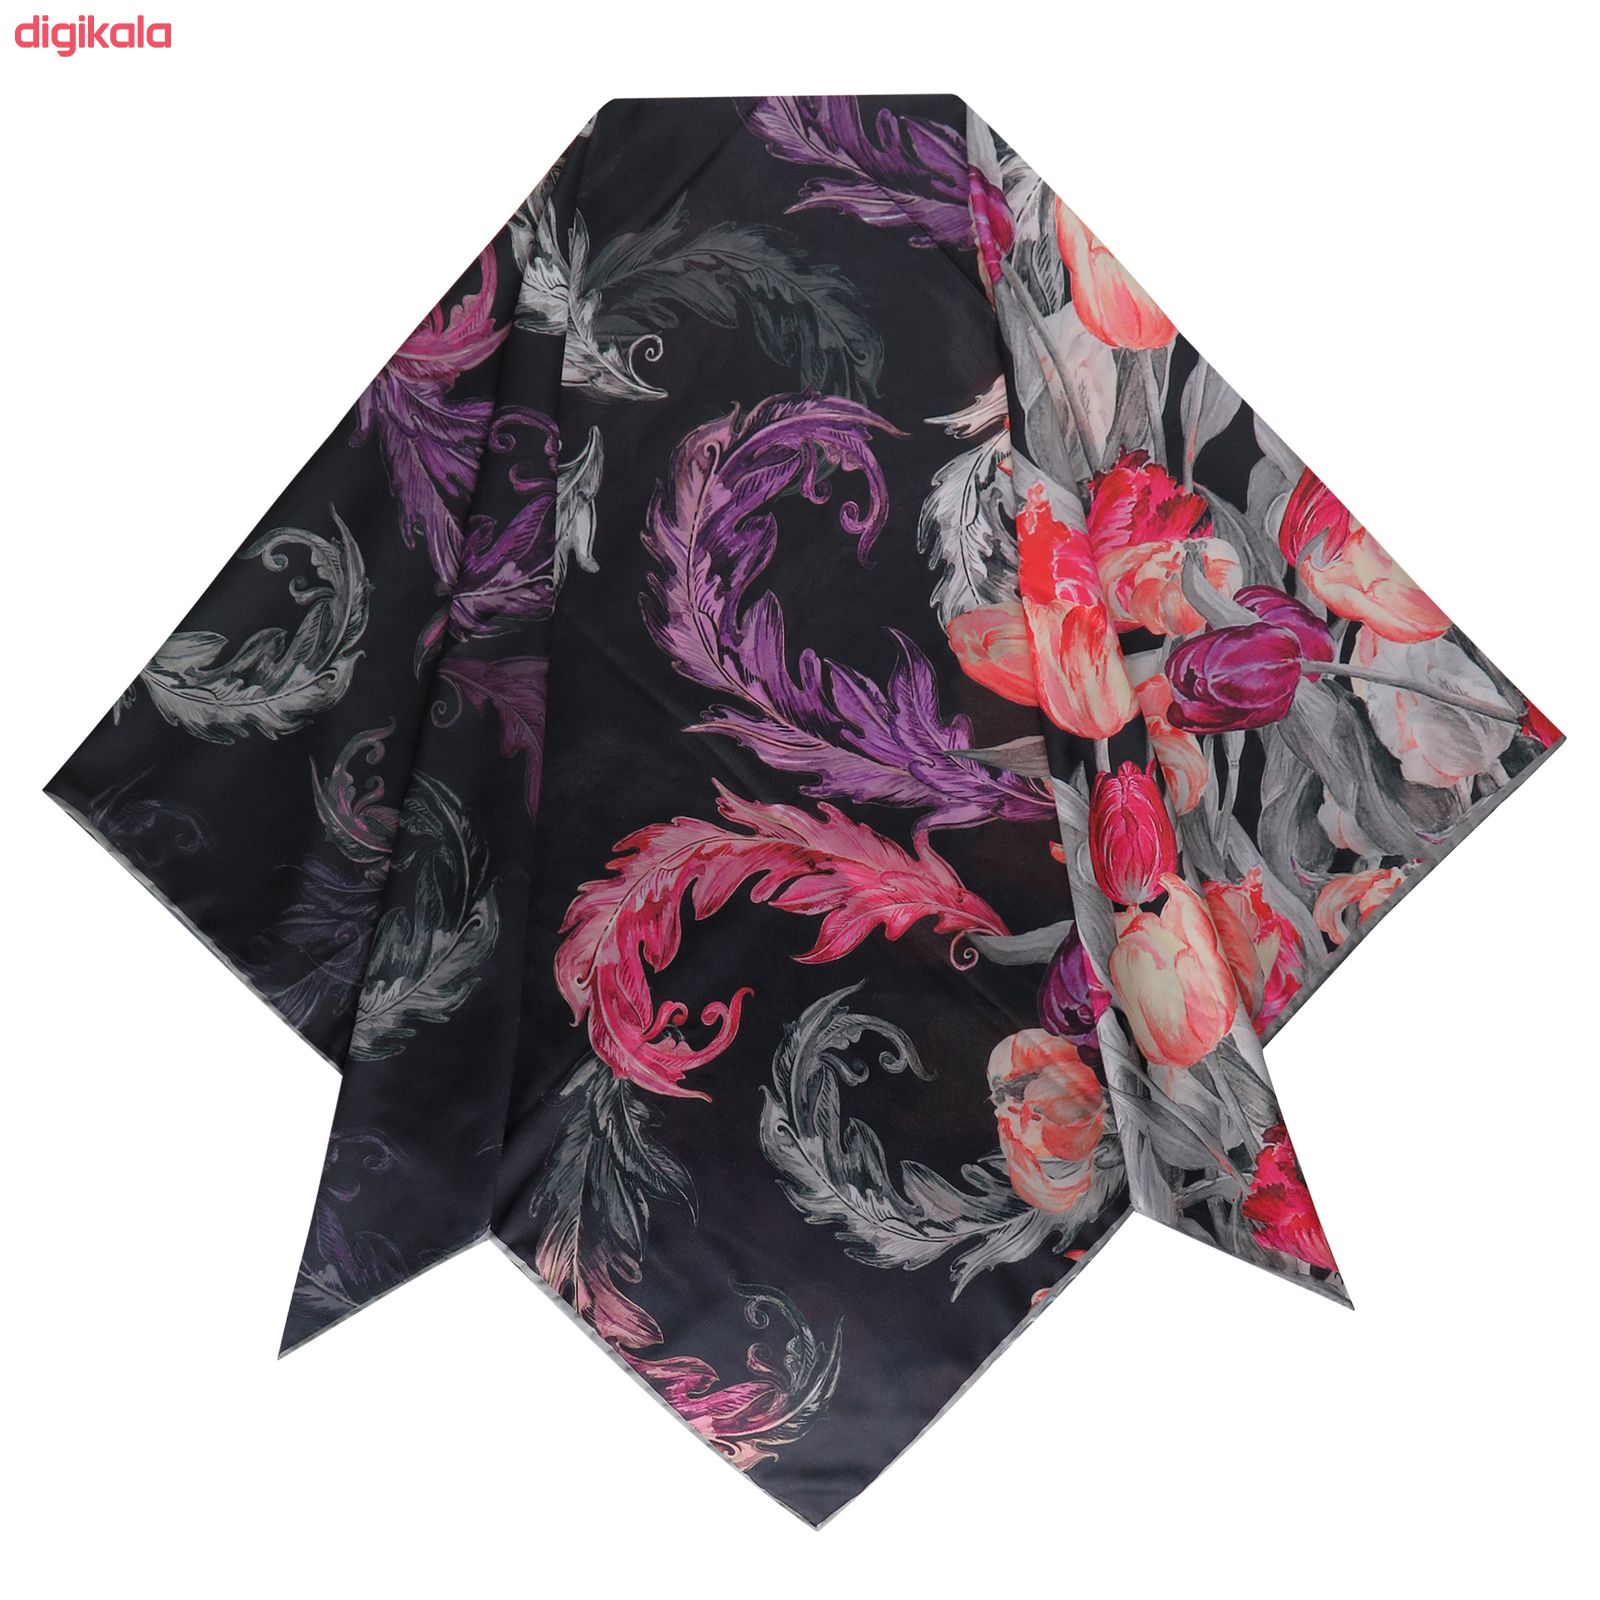  خرید اینترنتی با تخفیف ویژه روسری زنانه مدل گل لاله x26